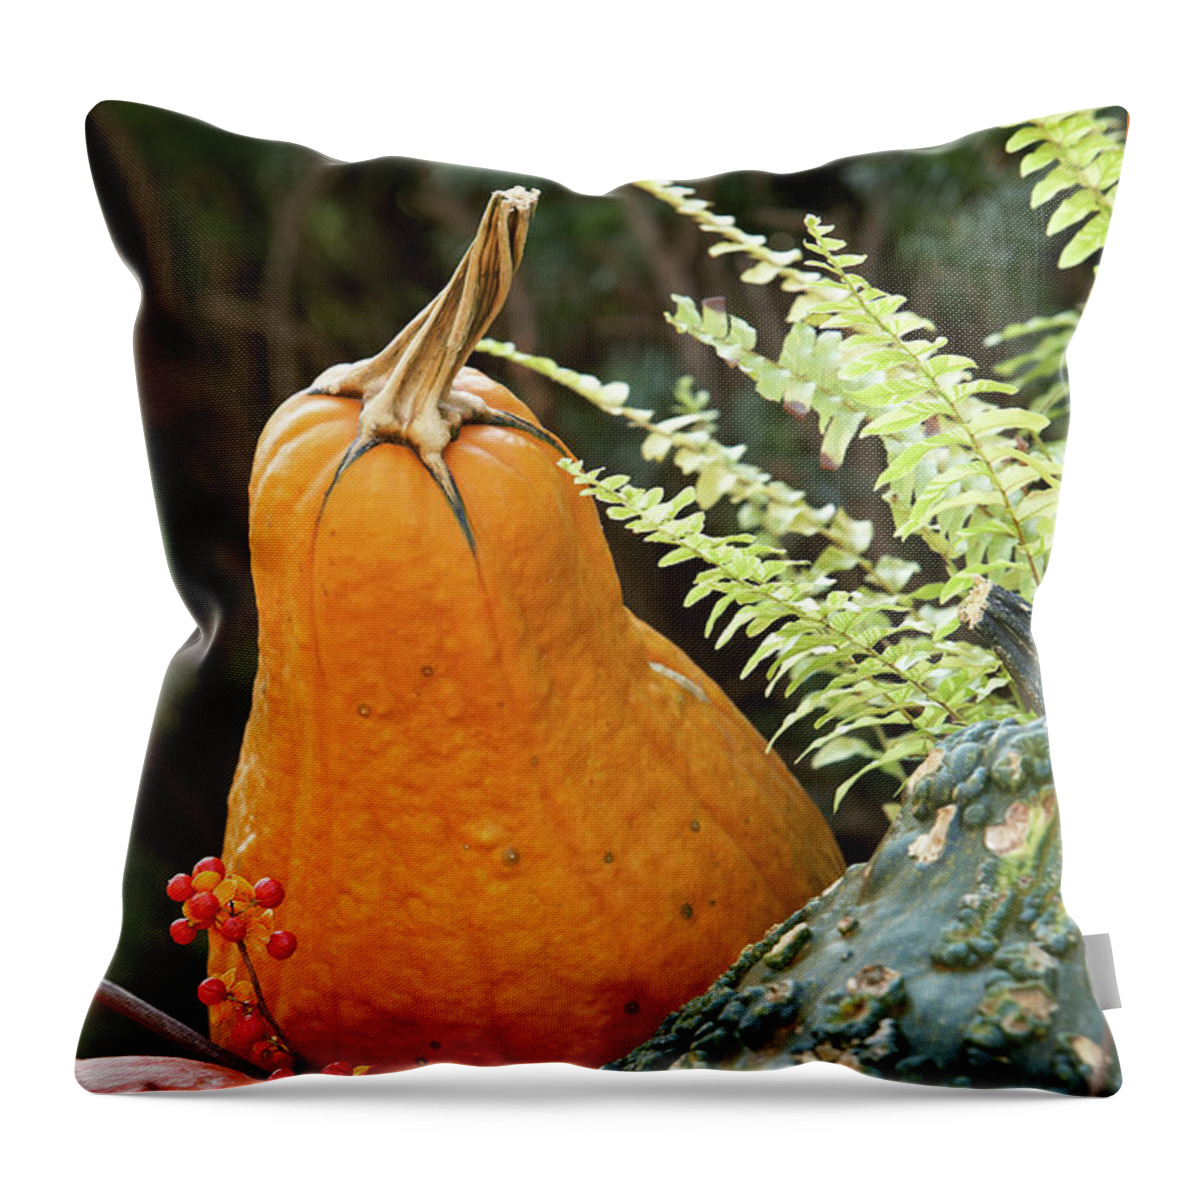 Garden Throw Pillow featuring the photograph Pumpkin power by Garden Gate magazine